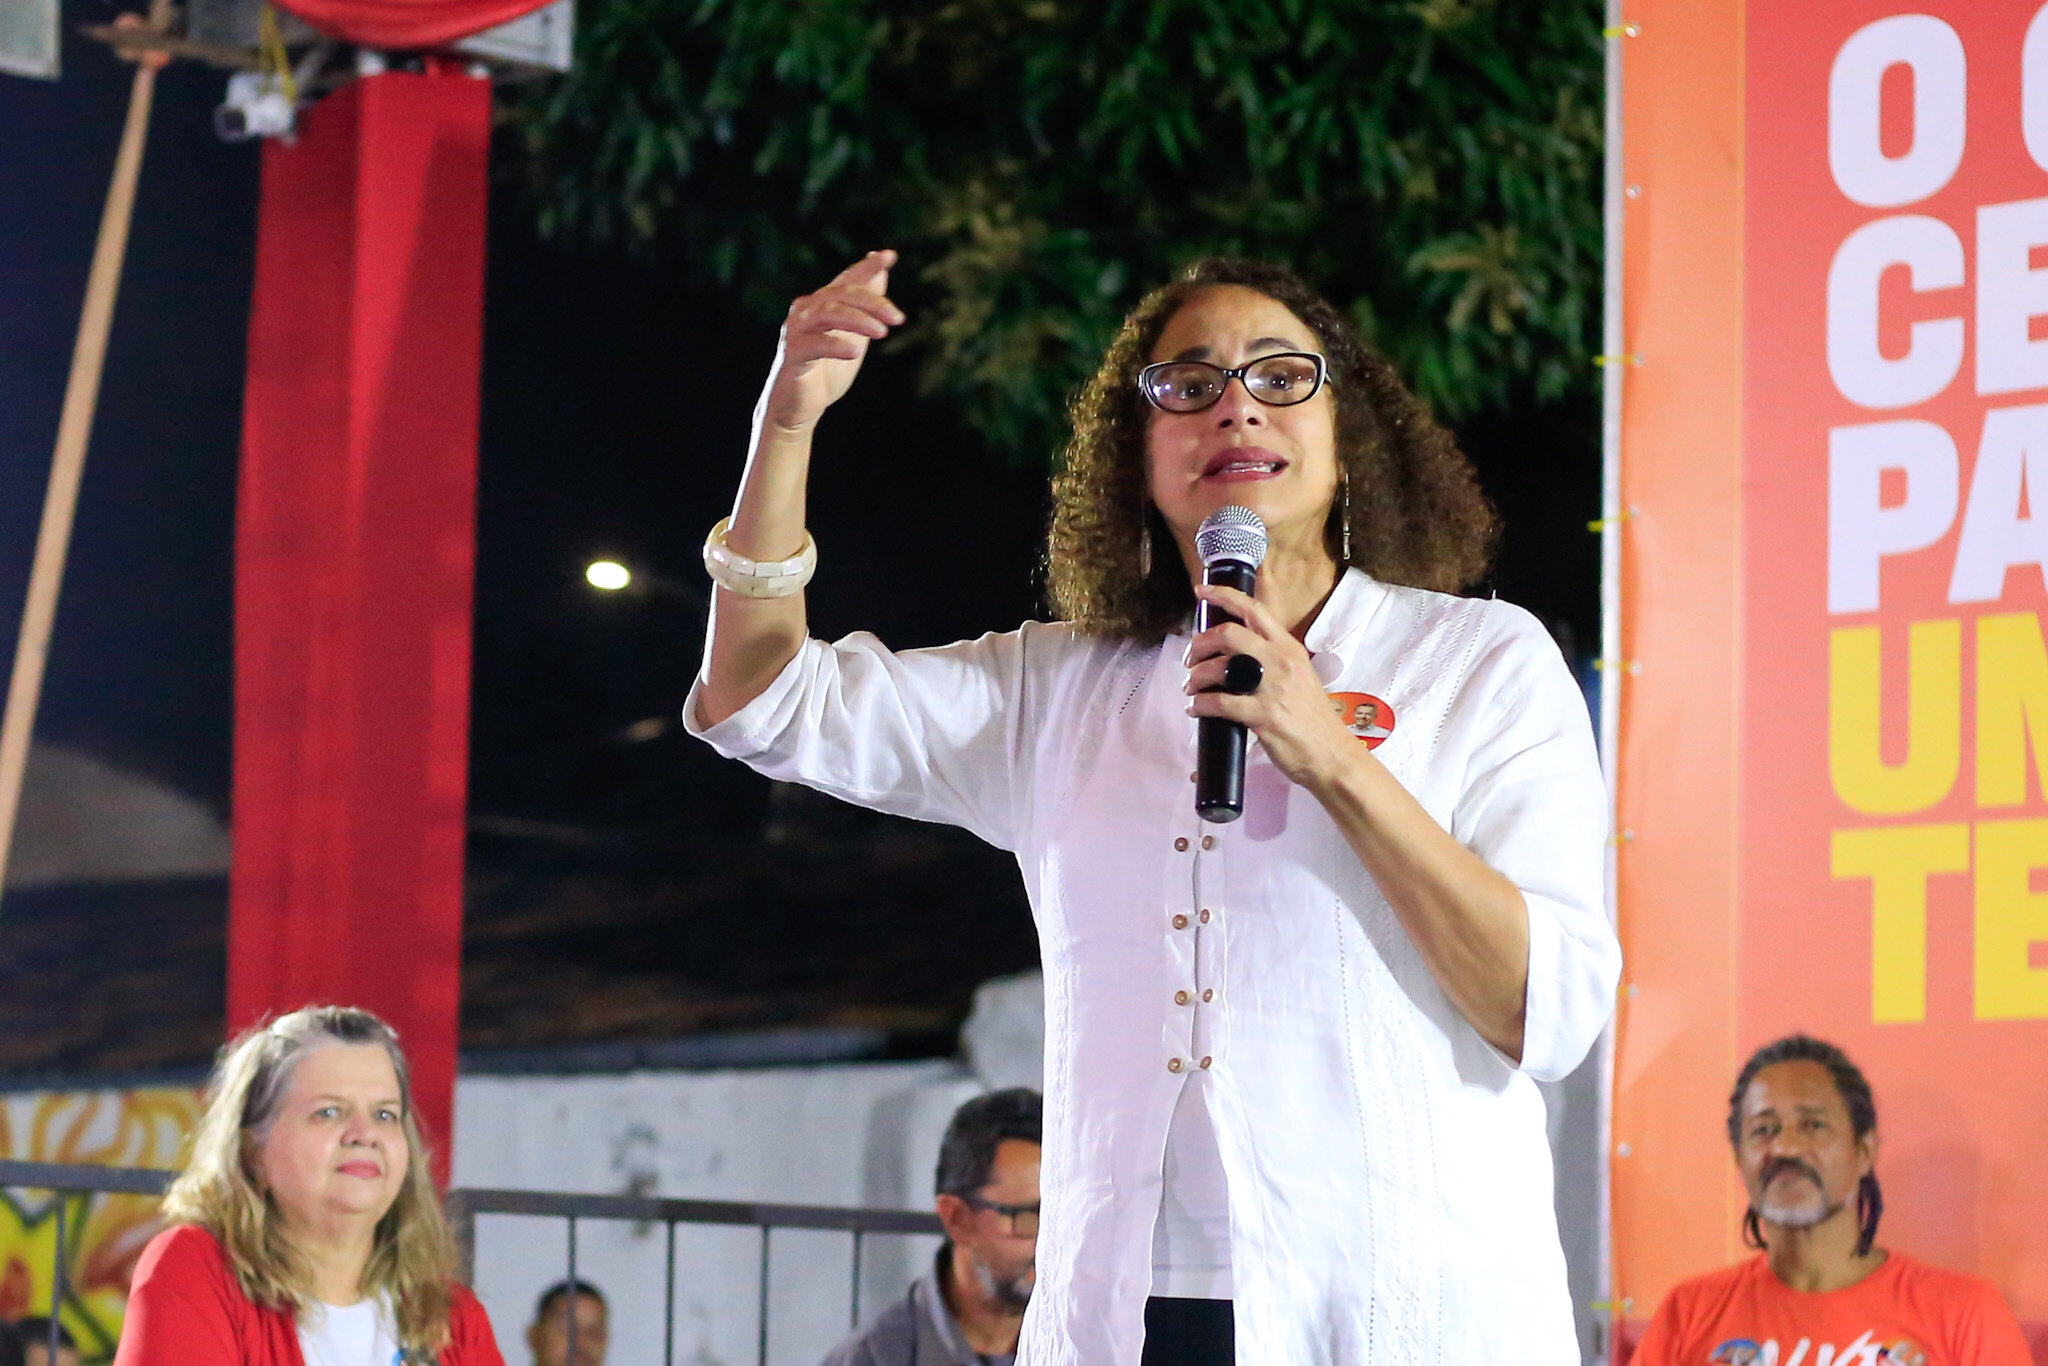 “Sorriso no rosto e vamos à luta eleger Lula domingo”, diz Luciana